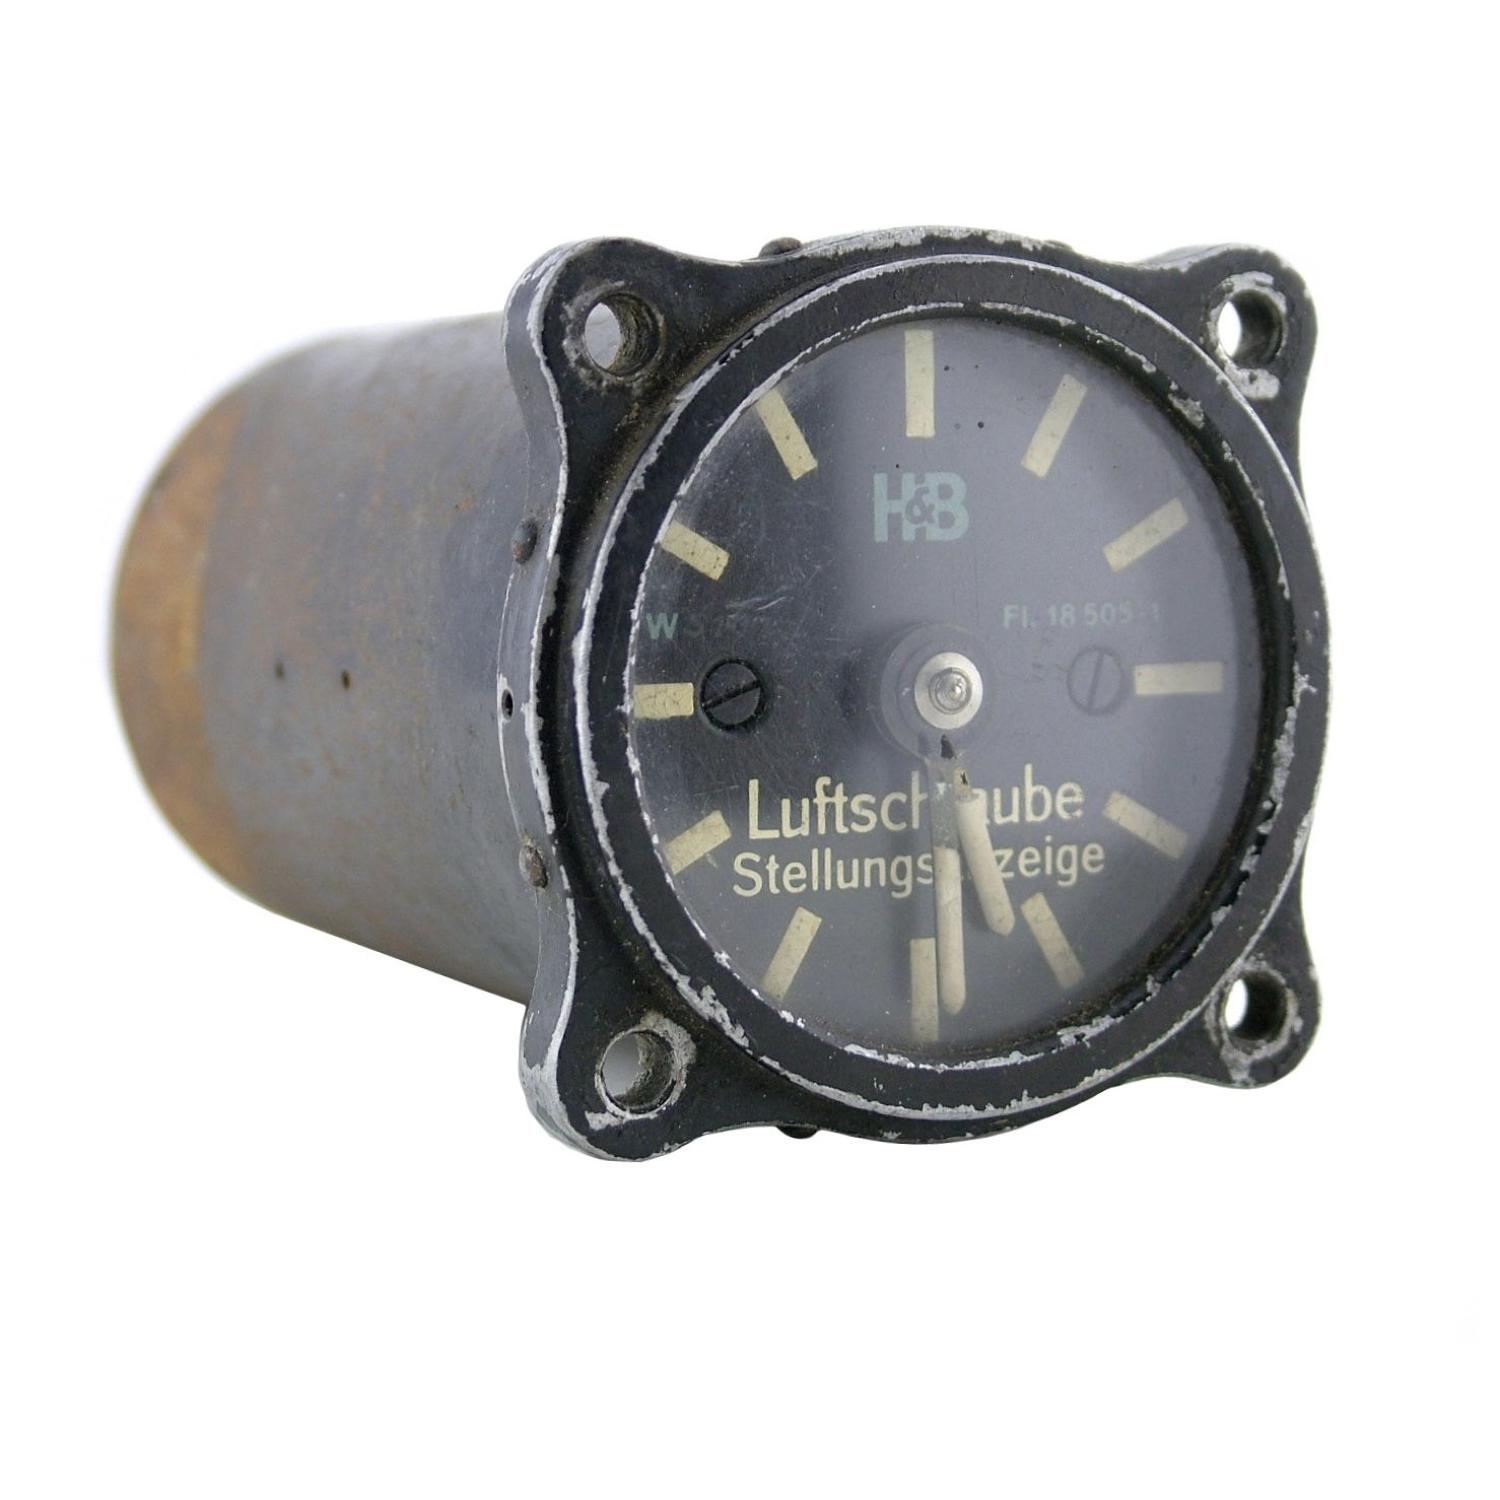 Luftwaffe airscrew pitch cockpit instrument